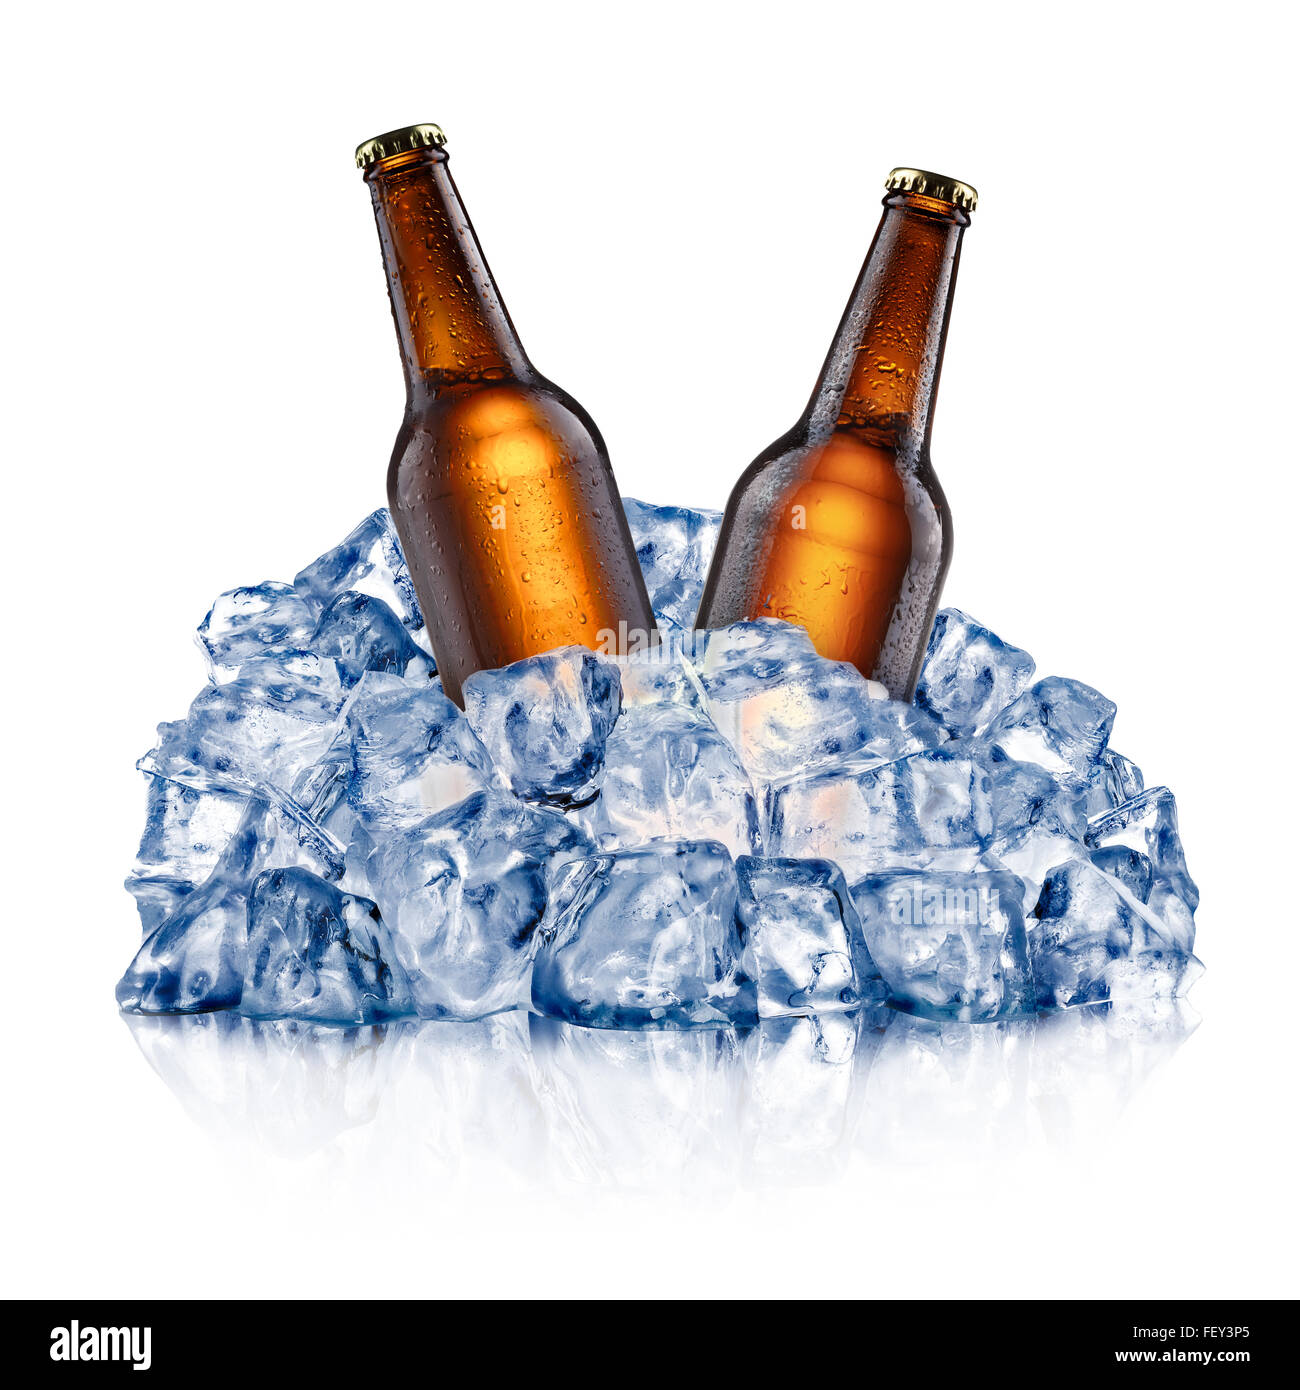 Marrone due bottiglie di birra, il raffreddamento in un ruvido ghiaccio tritato. I tracciati di ritaglio Foto Stock